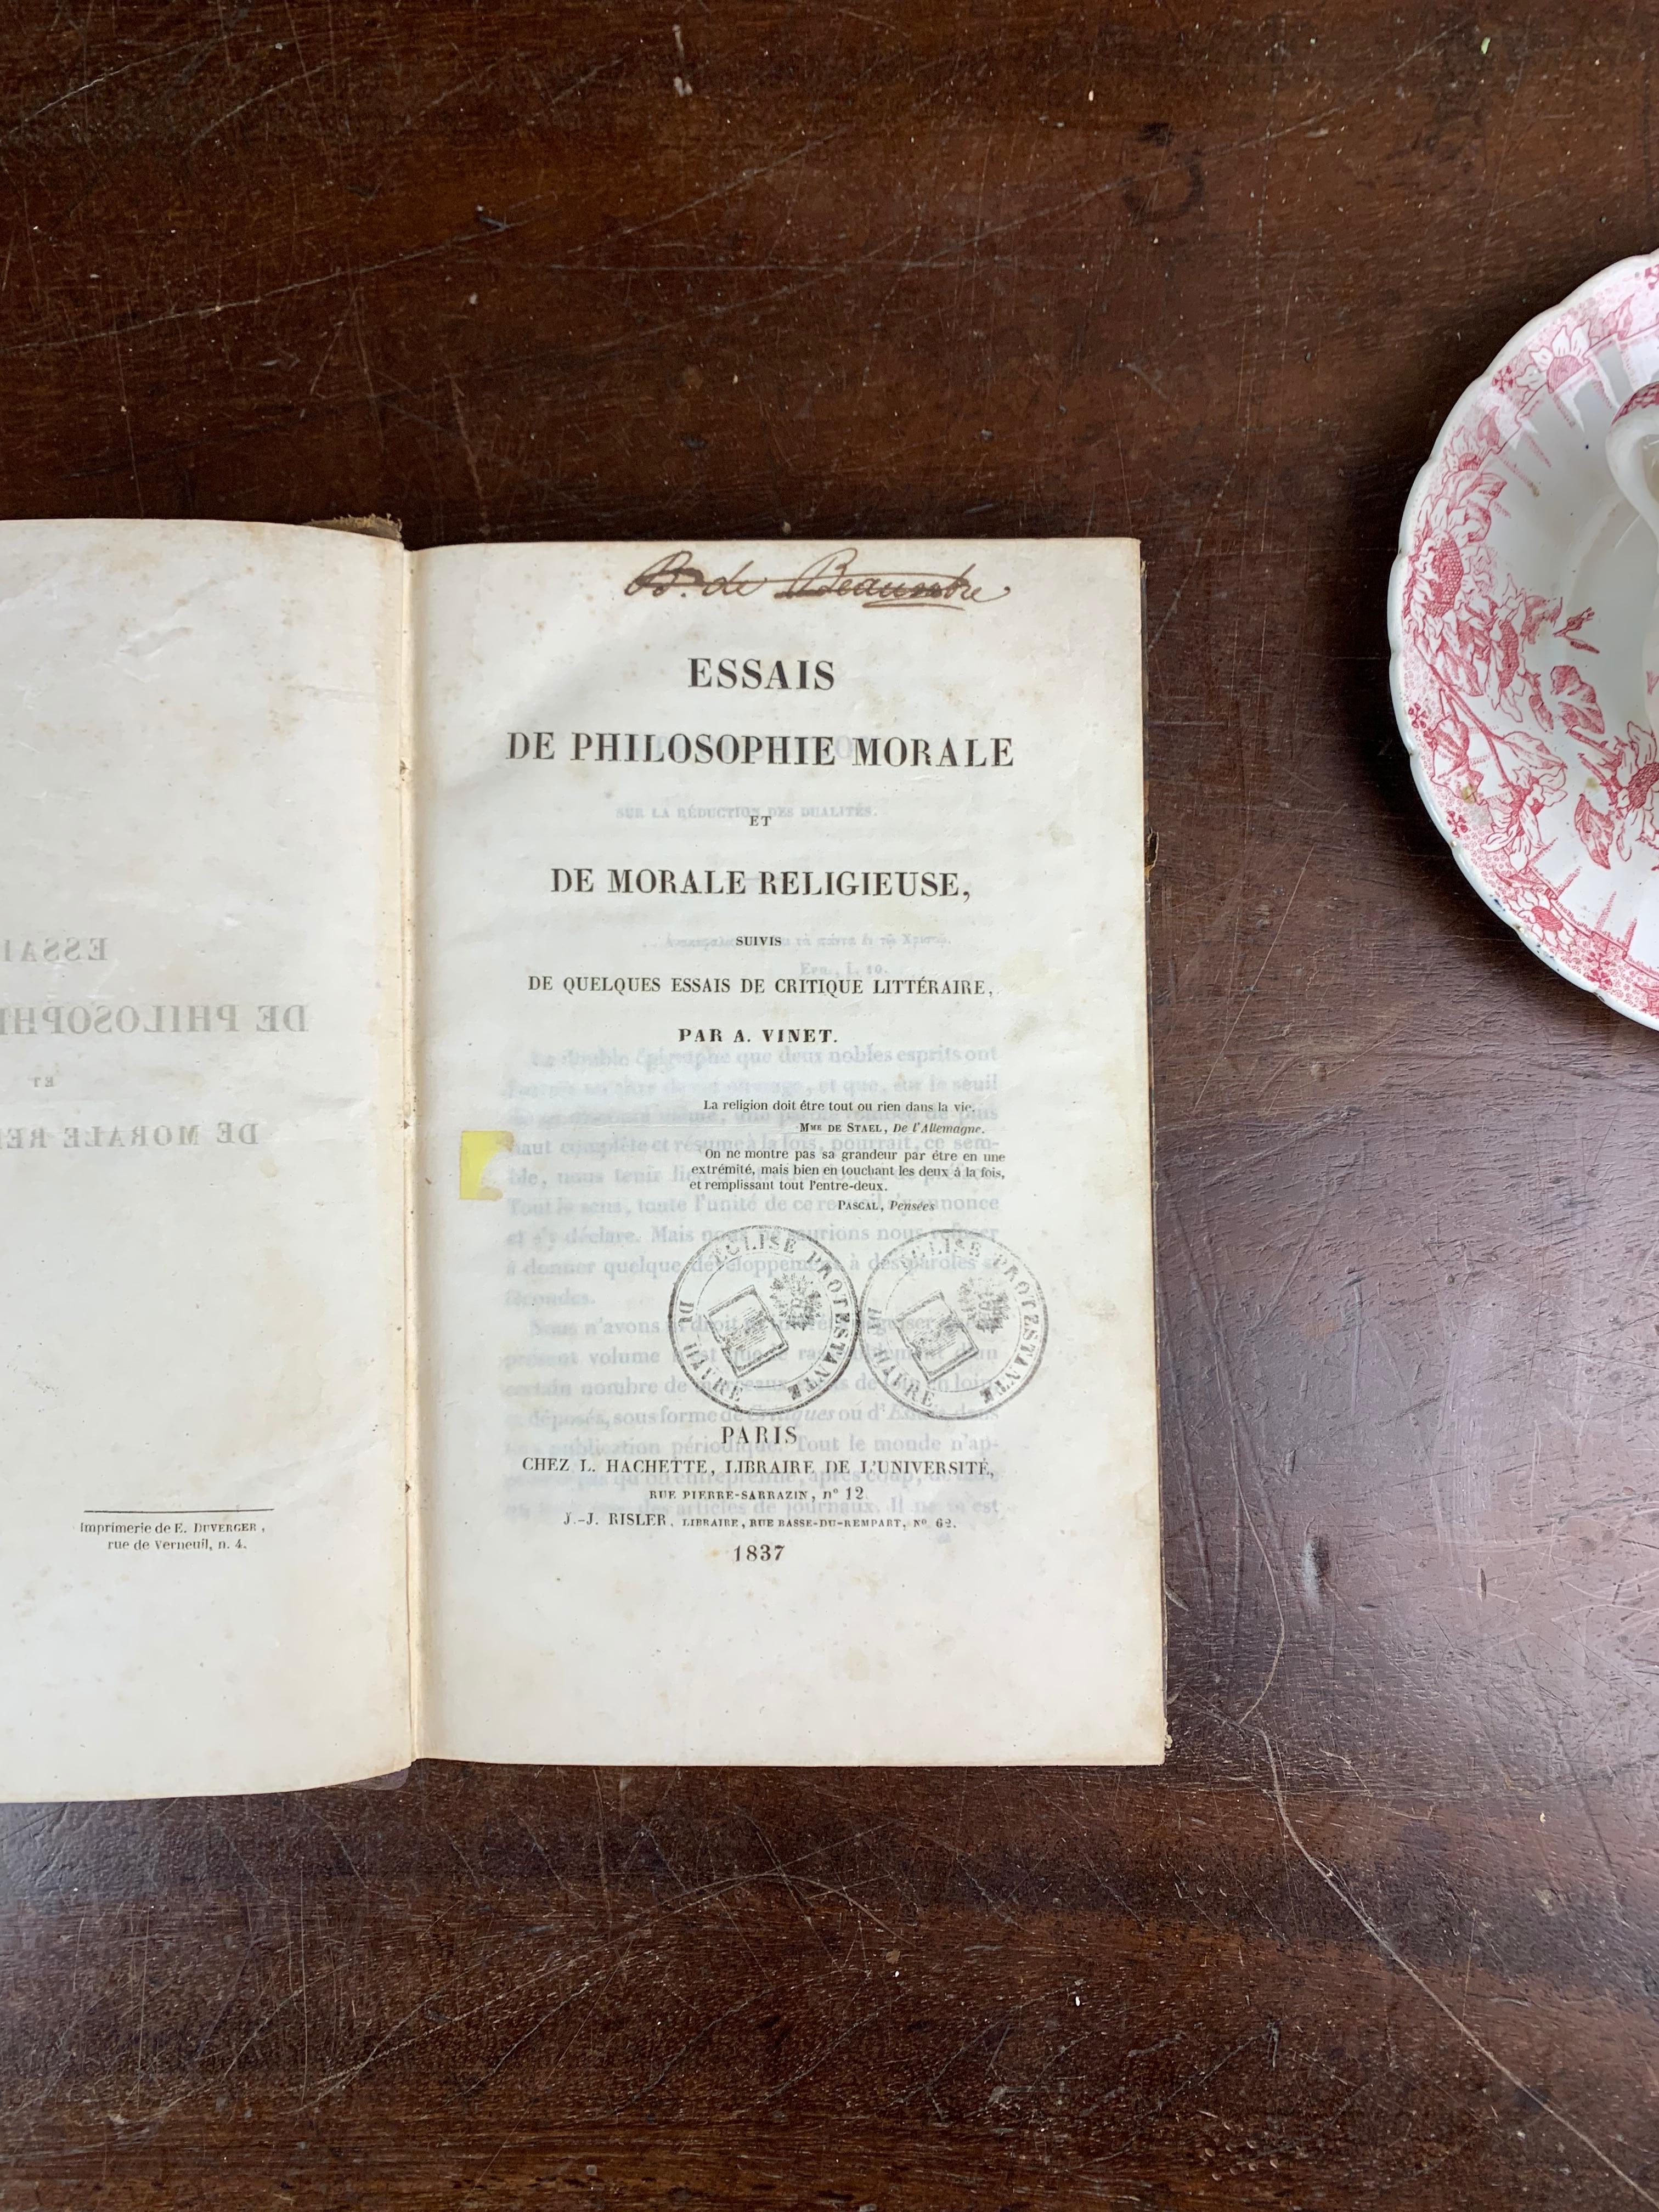 Ensemble de livres anciens datant du XIXe siècle. D'une ancienne bibliothèque protestante près du Havre en France. Ces livres sont appelés par exemple 